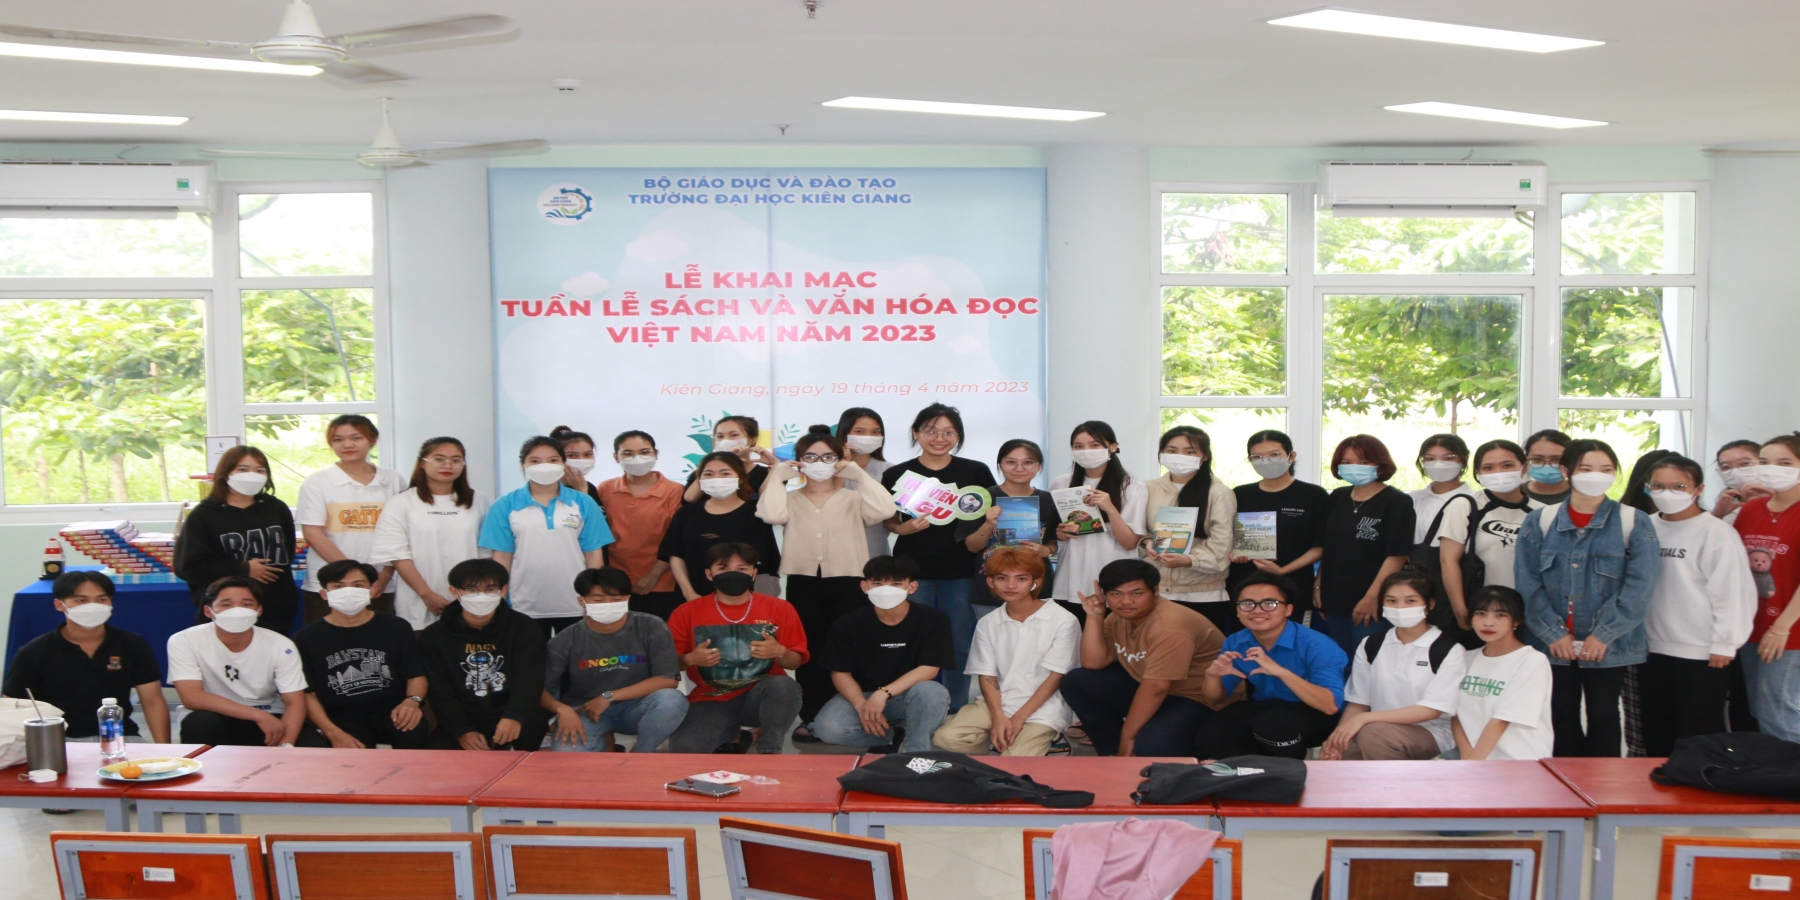 Trường Đại học Kiên Giang đẩy mạnh phát triển văn hóa đọc trong sinh viên